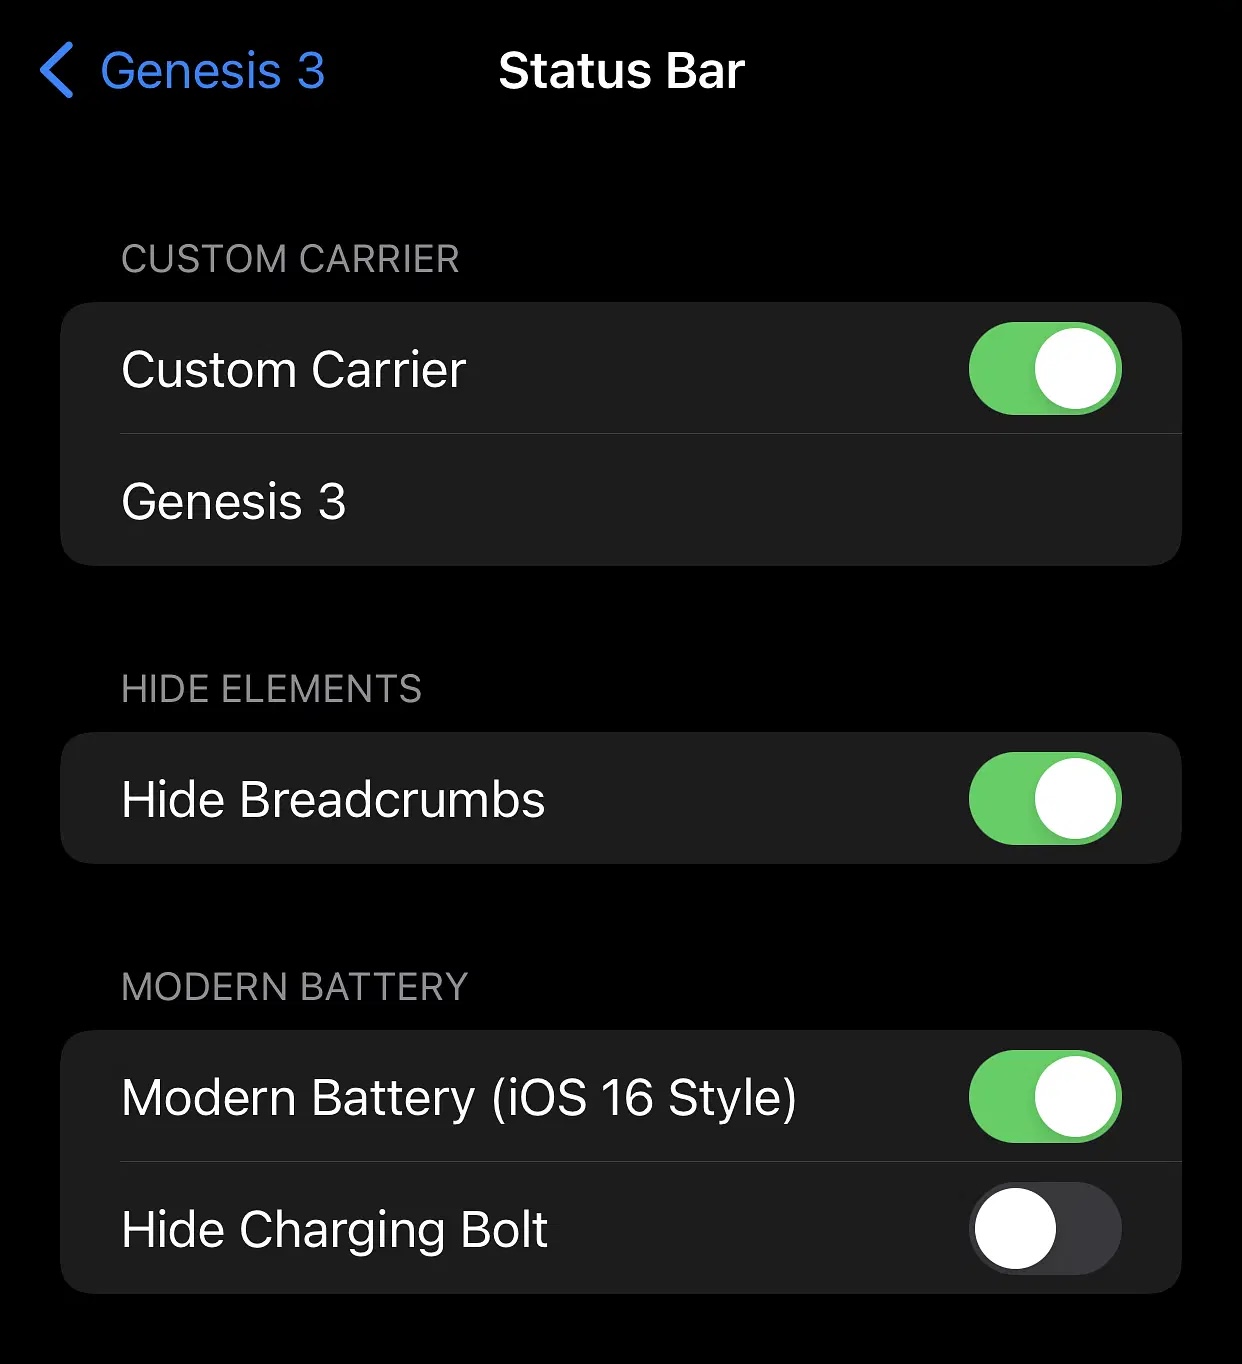 Genesis 3 Status Bar options.